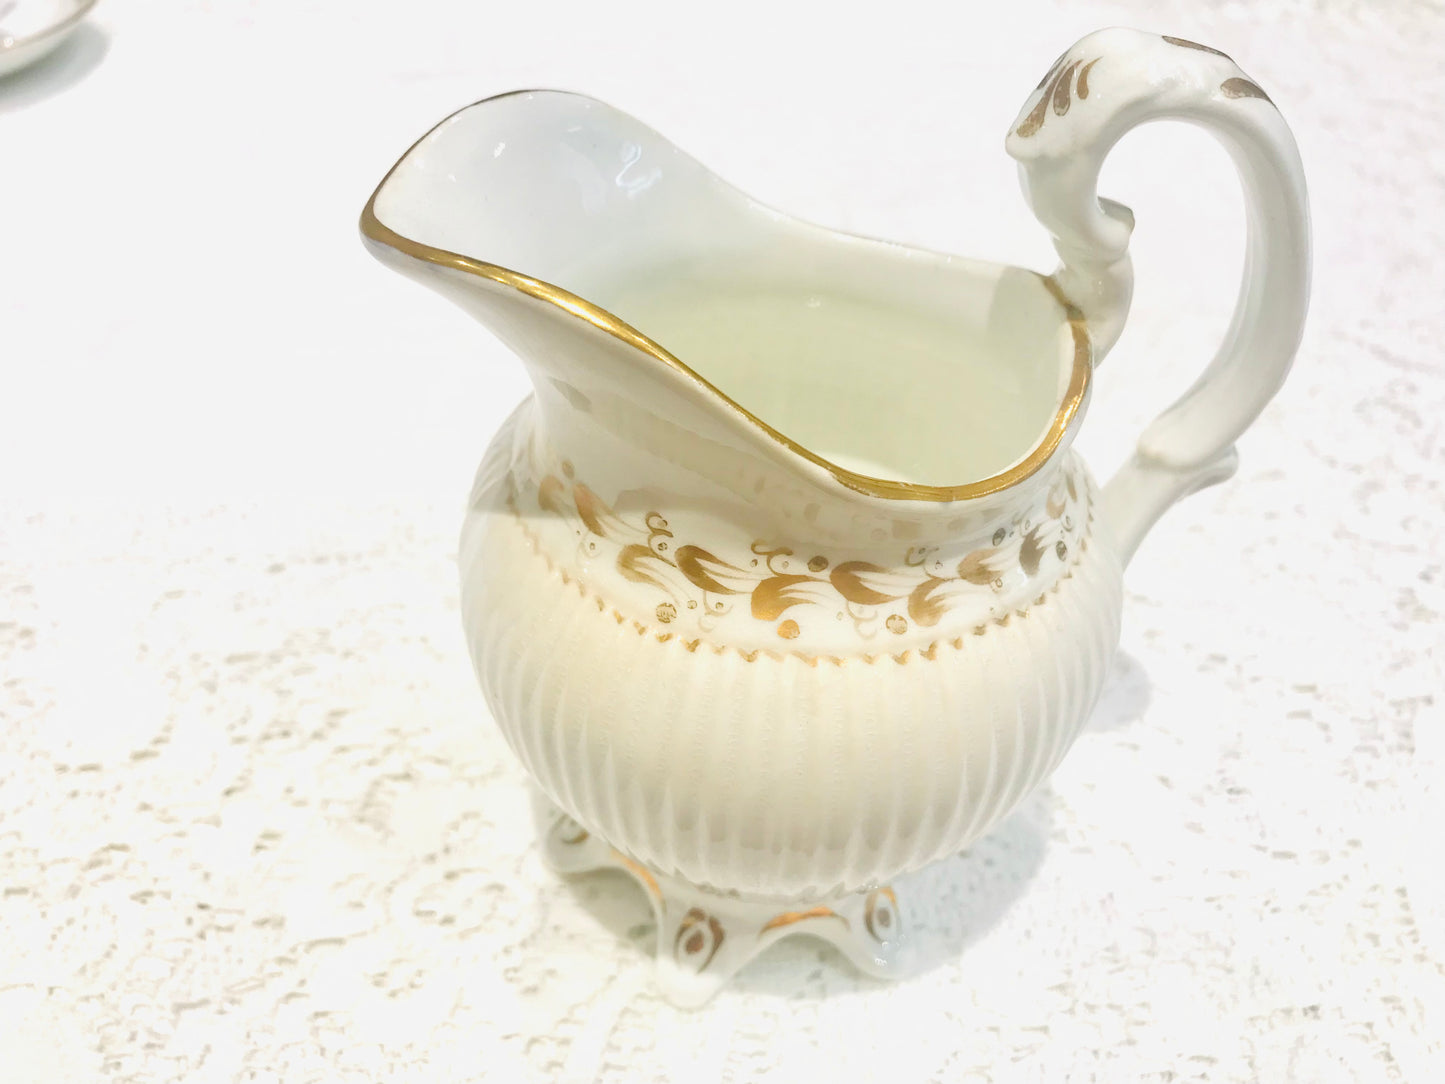 Antique “White & Gold Fleur de Leys” Tea set